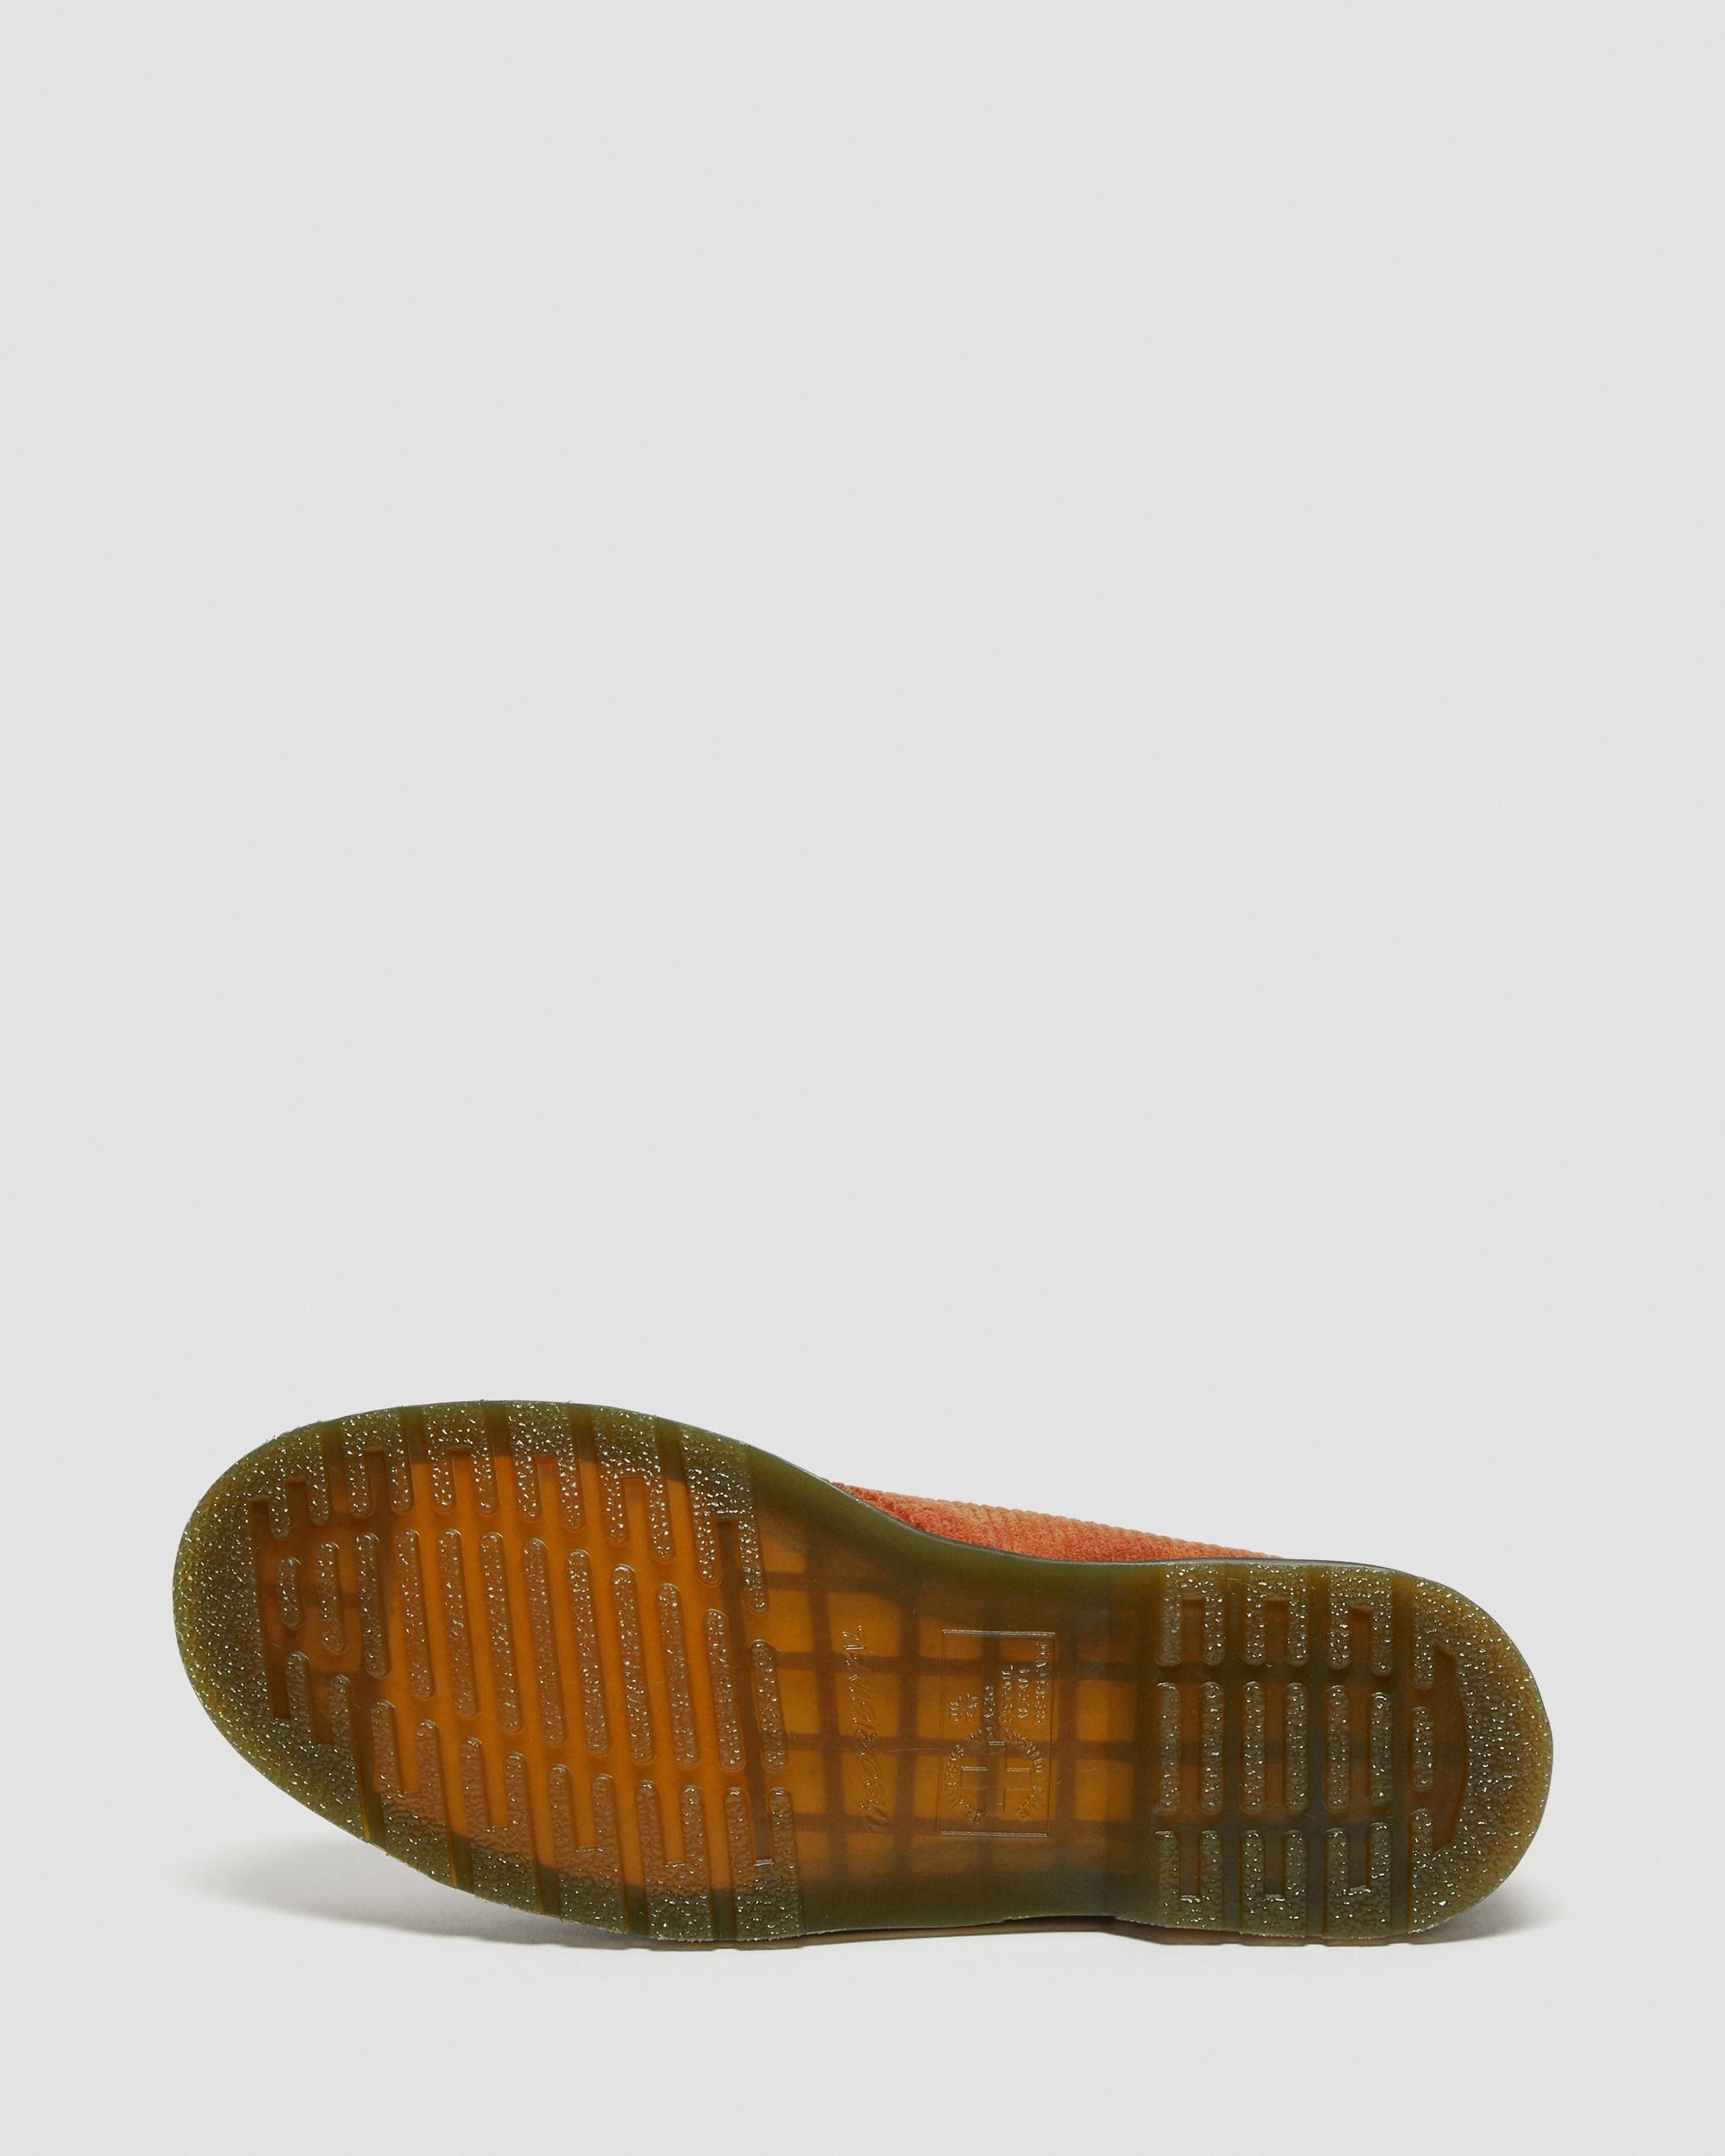 1461 Corduroy Oxford Shoes | Dr. Martens